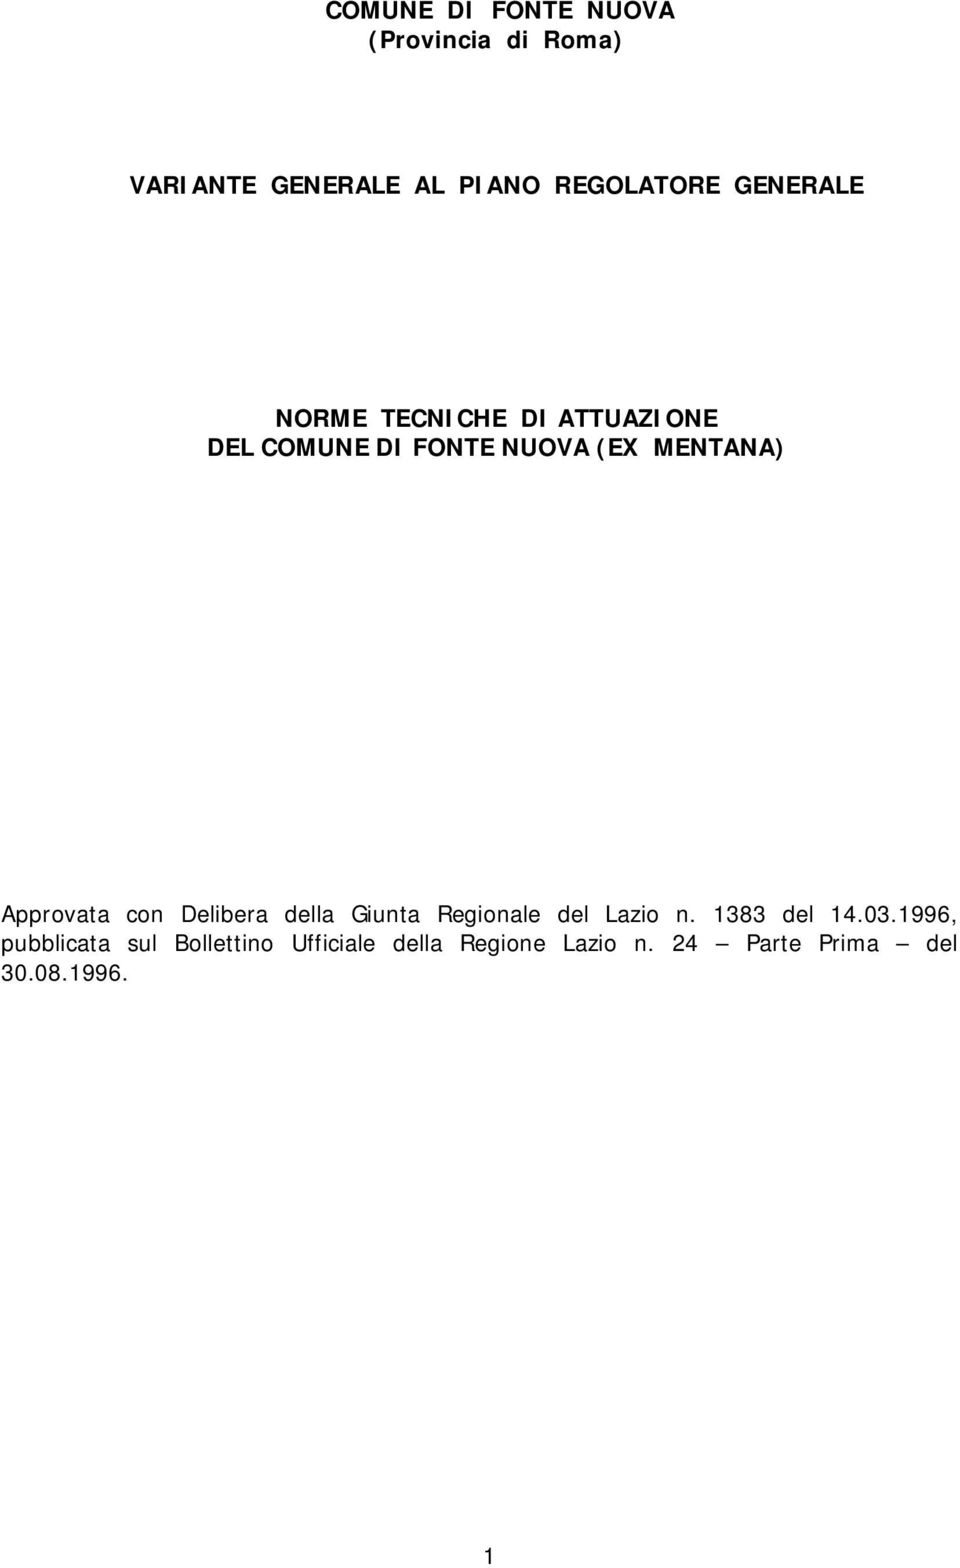 Approvata con Delibera della Giunta Regionale del Lazio n. 1383 del 14.03.